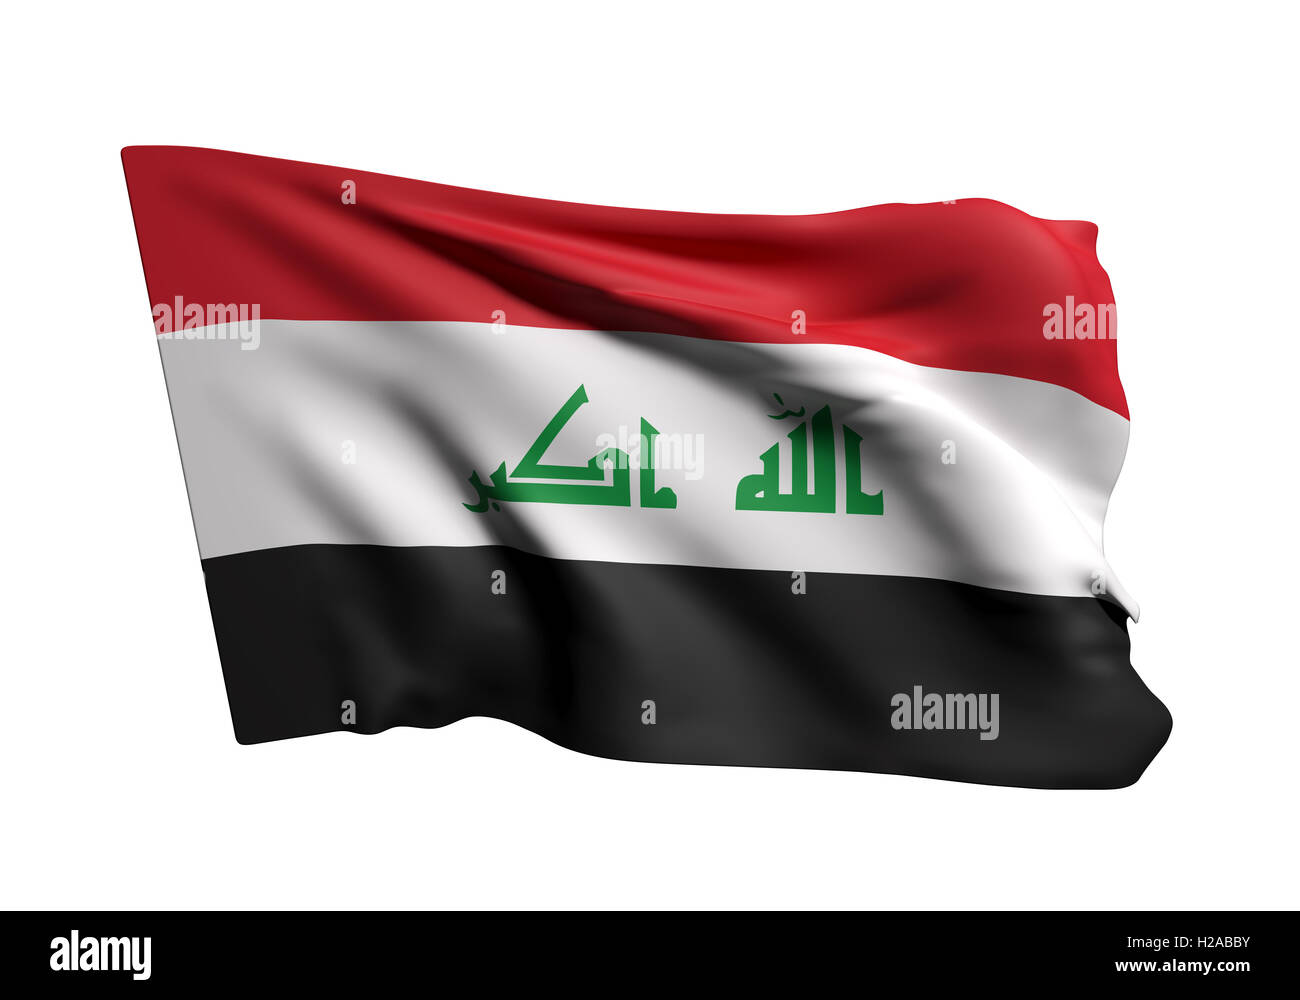 Iraq-Flagge in Schöner 3D-Abbildung Stock Abbildung - Illustration von  zahl, zeichen: 255109399